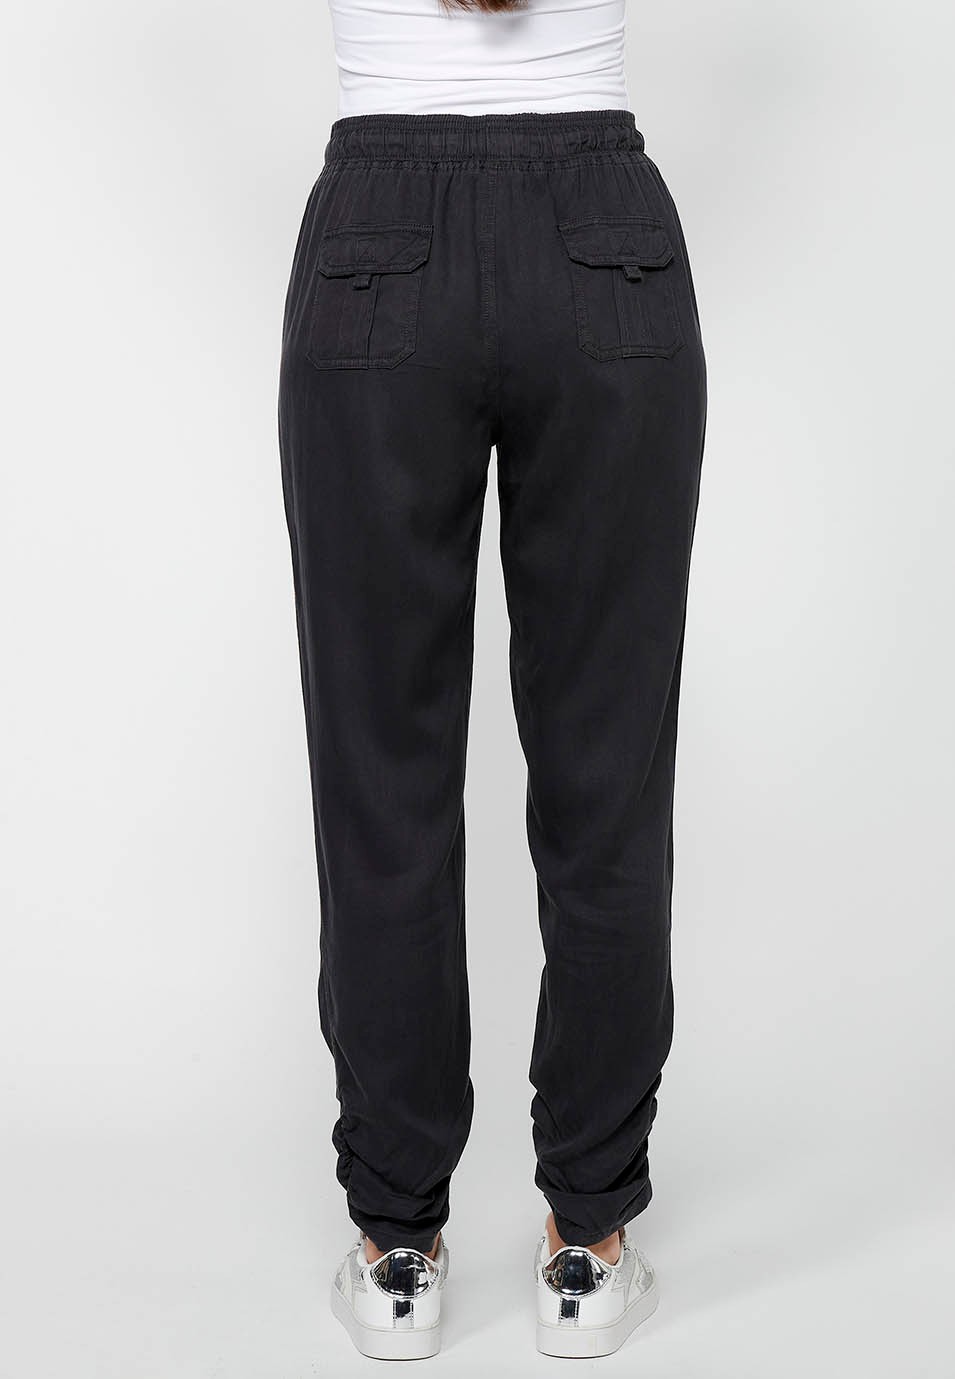 Pantalon de jogging long finition bouclée et taille caoutchoutée avec quatre poches dont deux à l'arrière avec rabat en Noir pour Femme 6